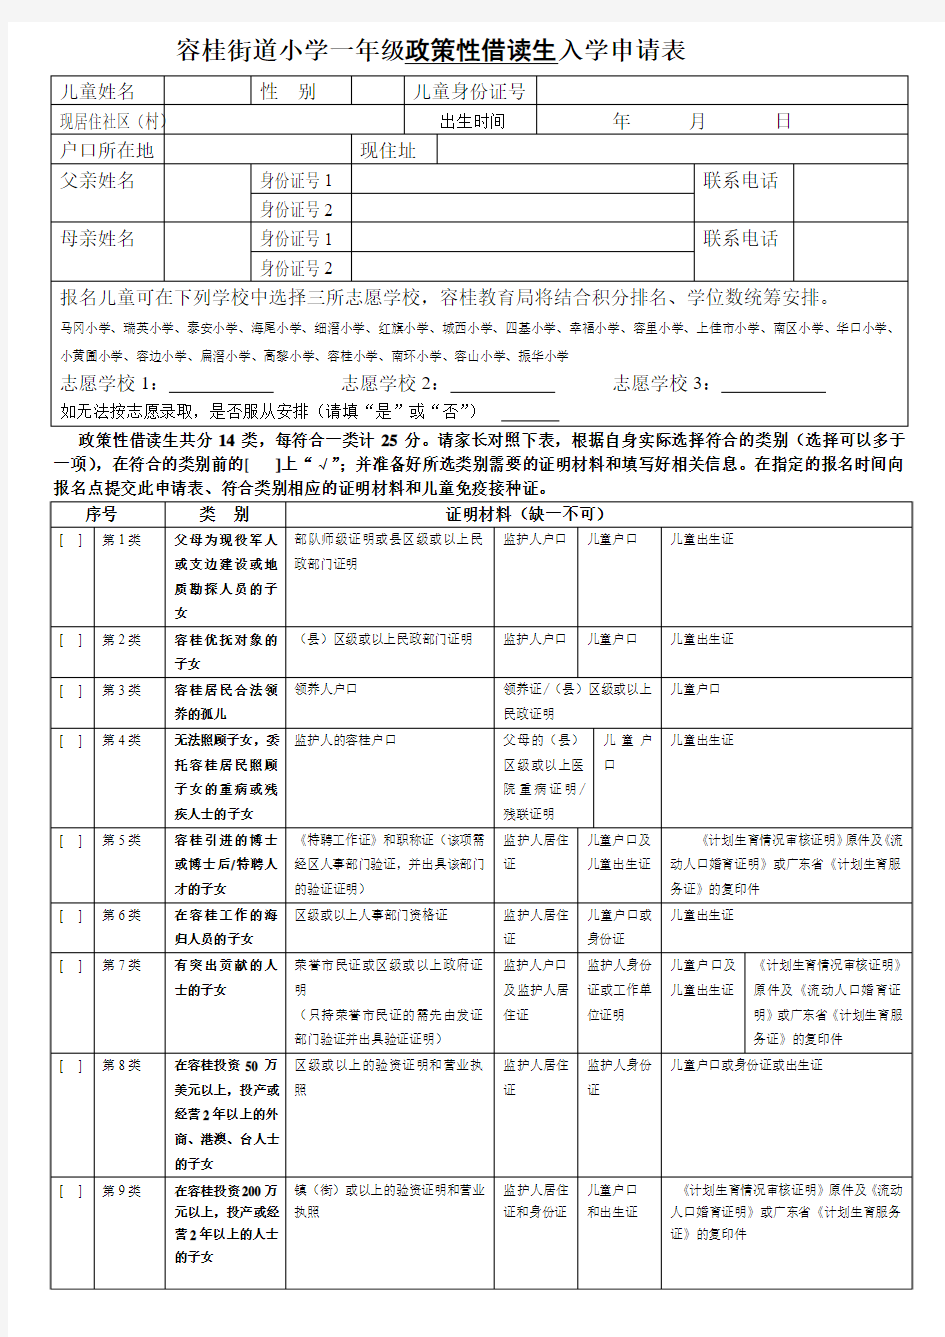 容桂街道小学一年级政策性借读生入学申请表